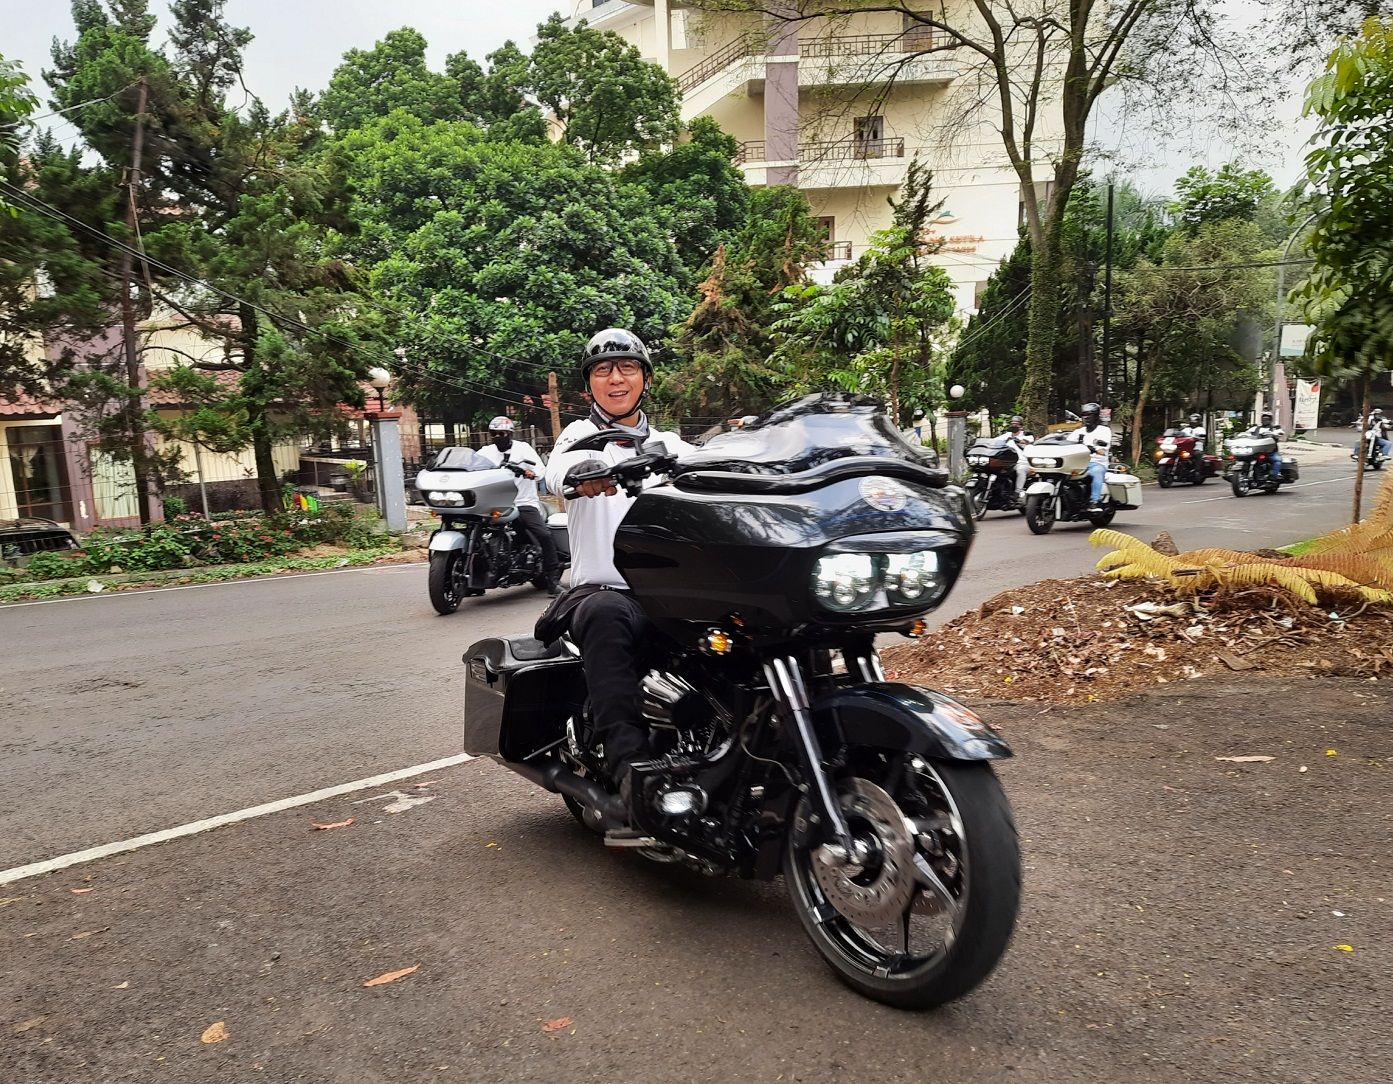 RGOG bukanlah klub motor, namun ini suatu wadah atau forum silaturahmi bagi para pengguna Harley-Davidson Tipe Road Glide, yang jumlah total anggotanya di seluruh Indonesia tercatat 1.003 personel.